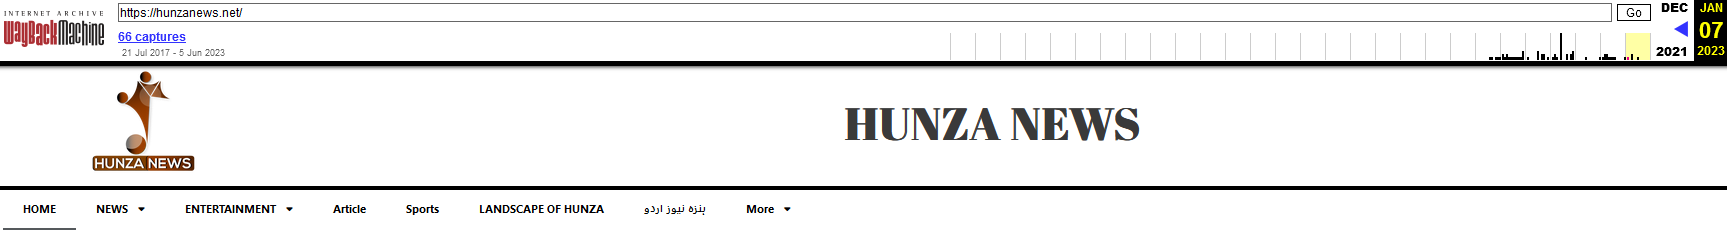 Figur 4 Hunza News redesign ingen alternativ nedlastingsapp